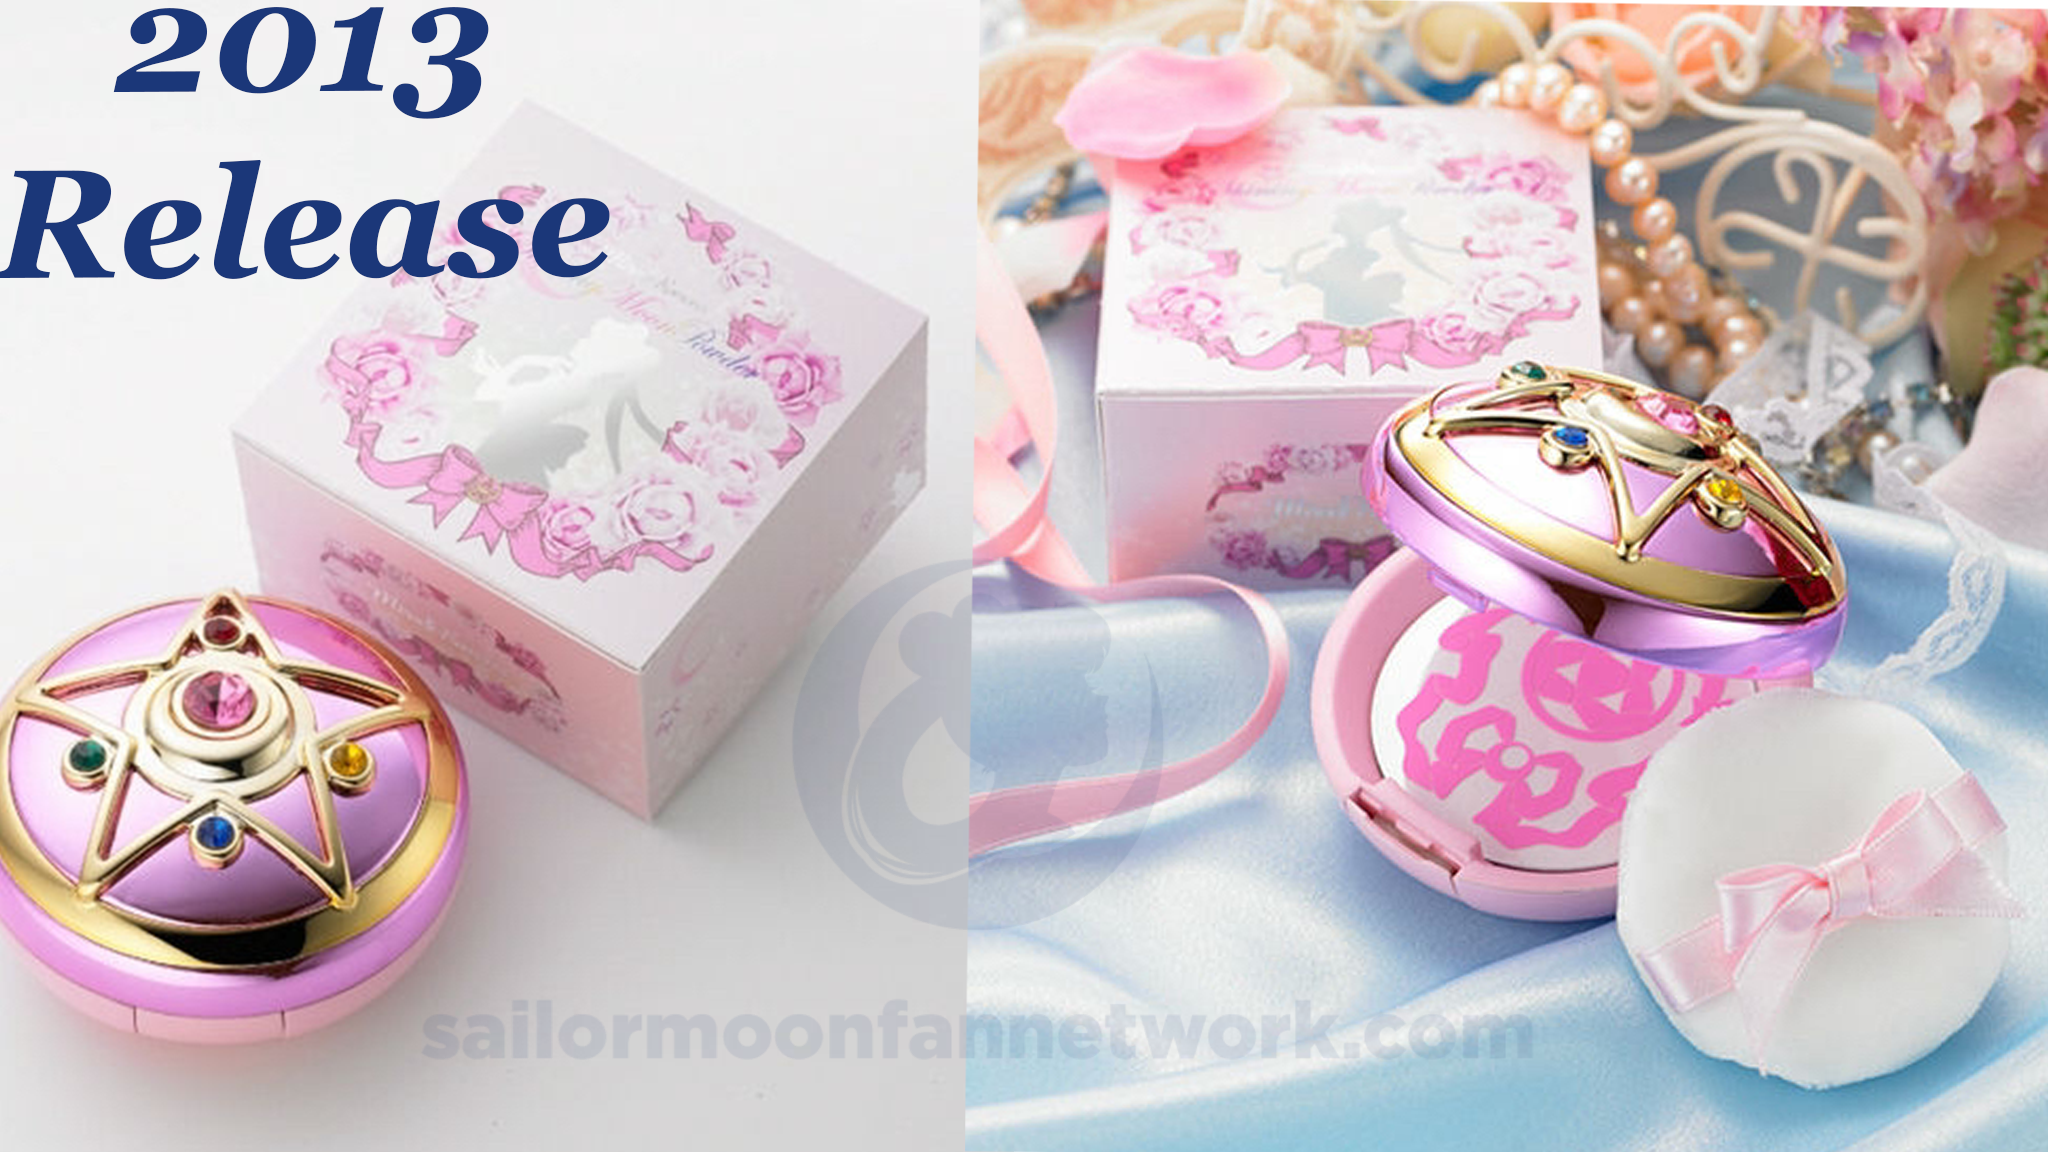 Details about   Sailor Moon 20th Anniversary Miracle Romance Makeup Shining Powder Japan Bandai 